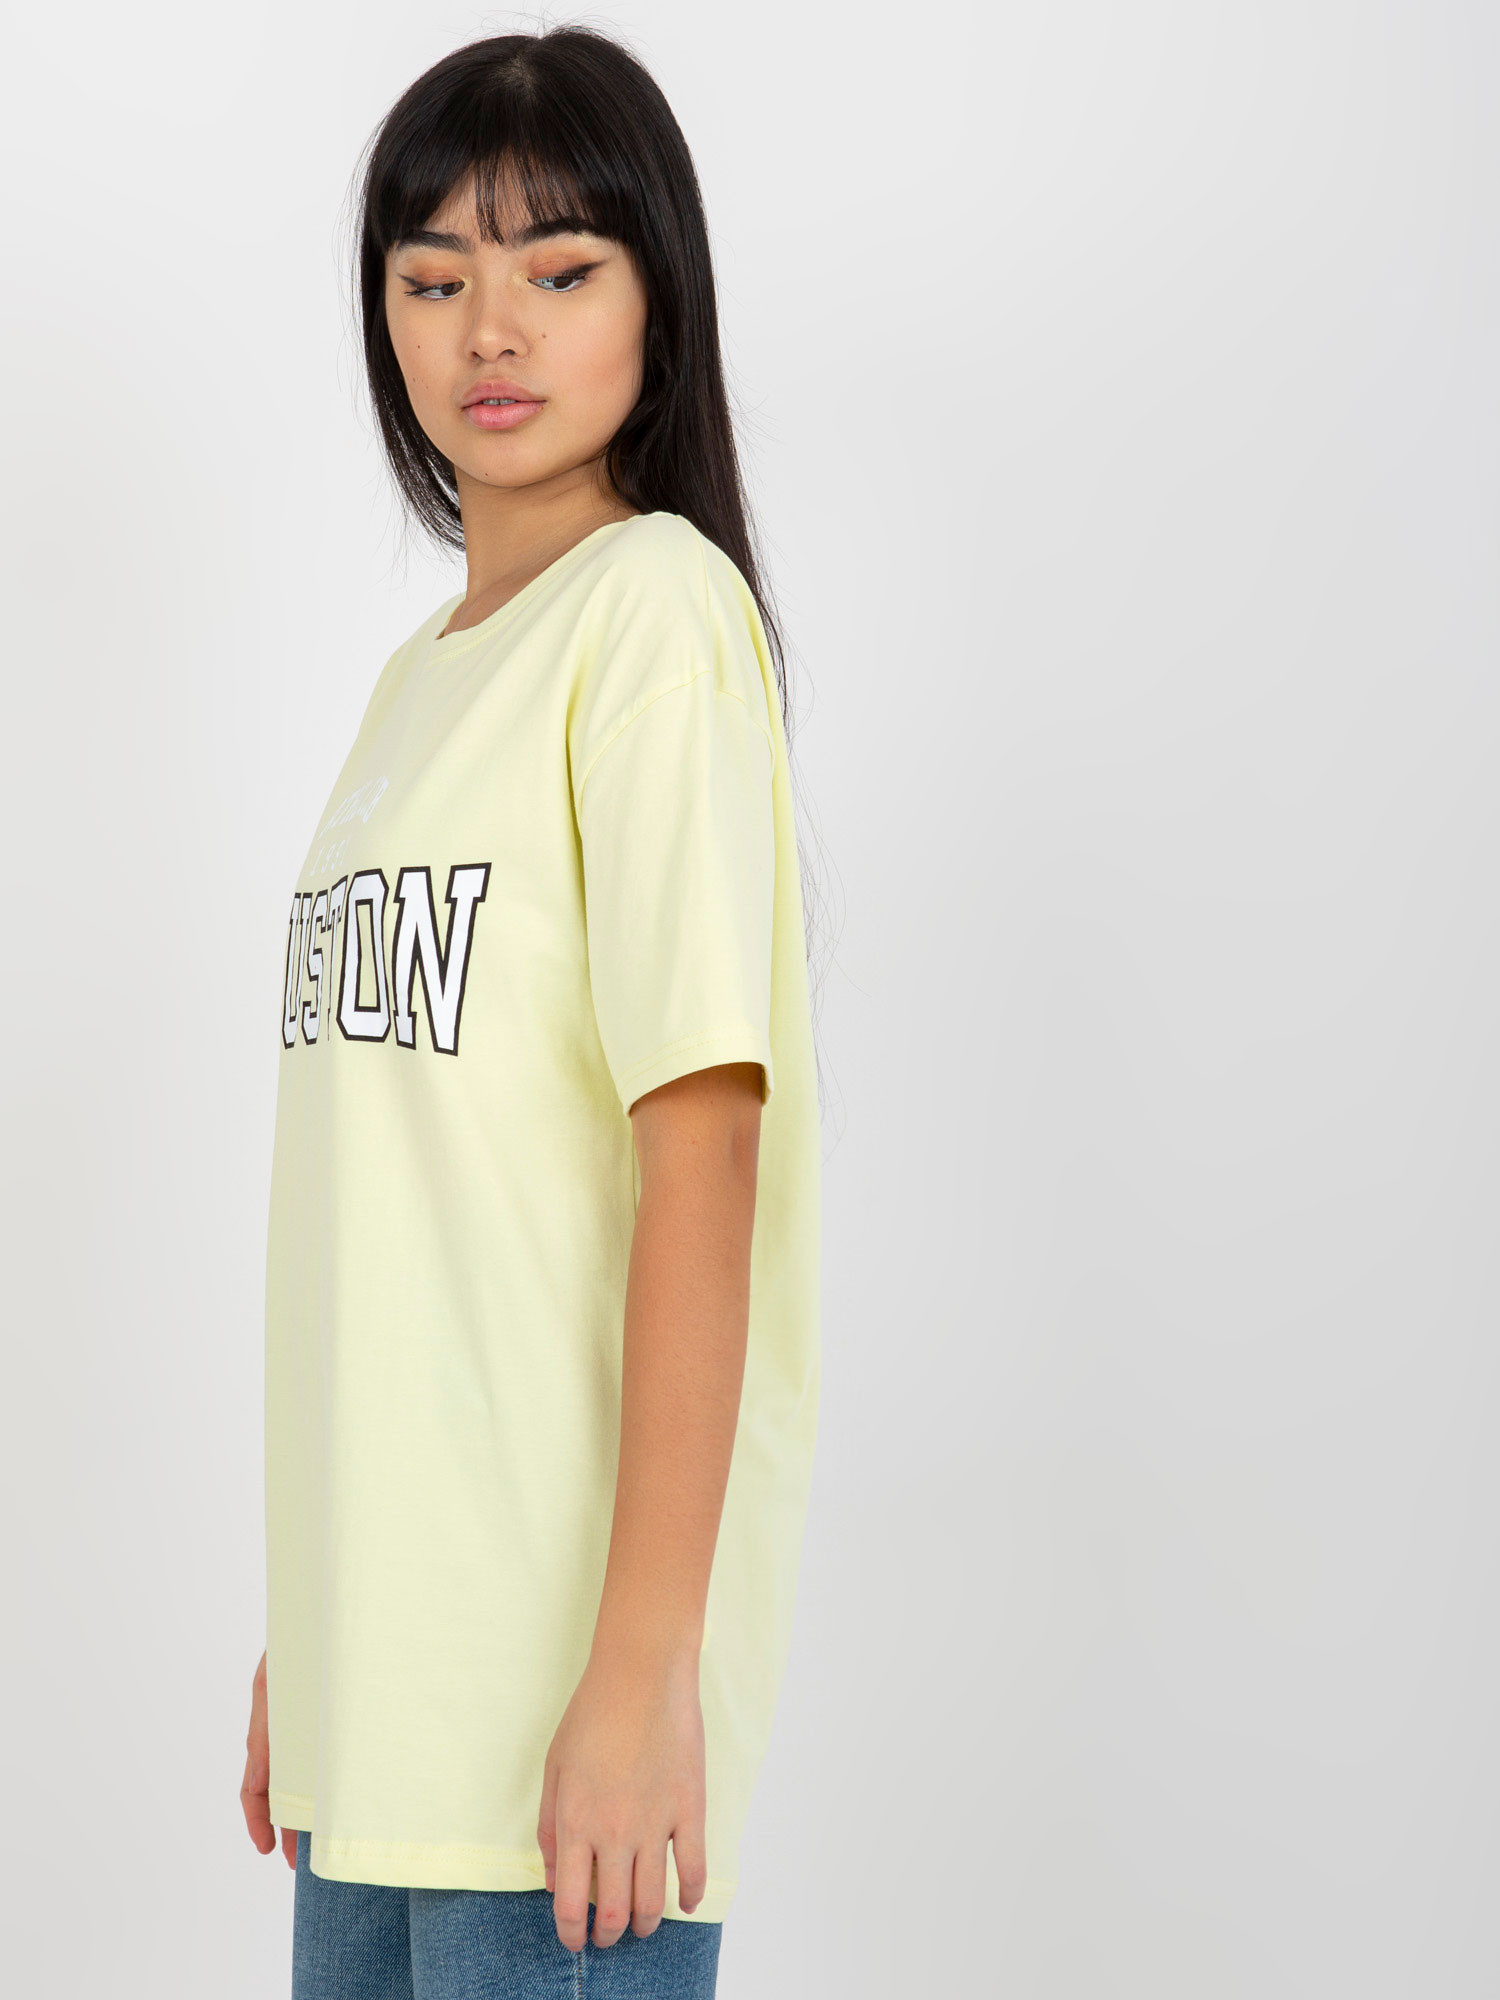 Dámské tričko EM TS 527 1.26X světle žlutá - FPrice jedna velikost